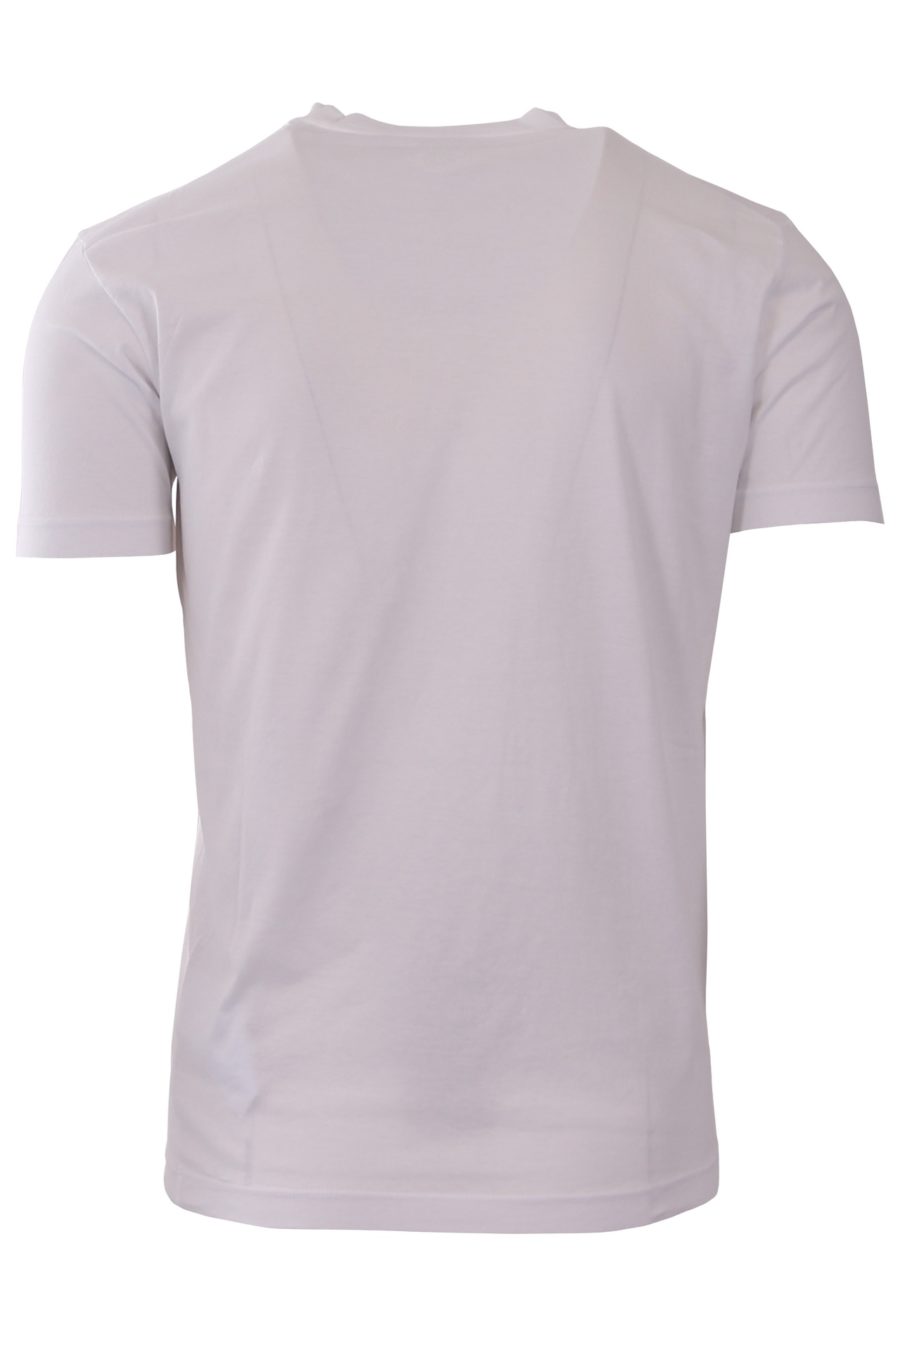 T-shirt Dsquared2 blanc avec logo à carreaux rouges - dd936b4b287405965f843dca67634d168a58defc